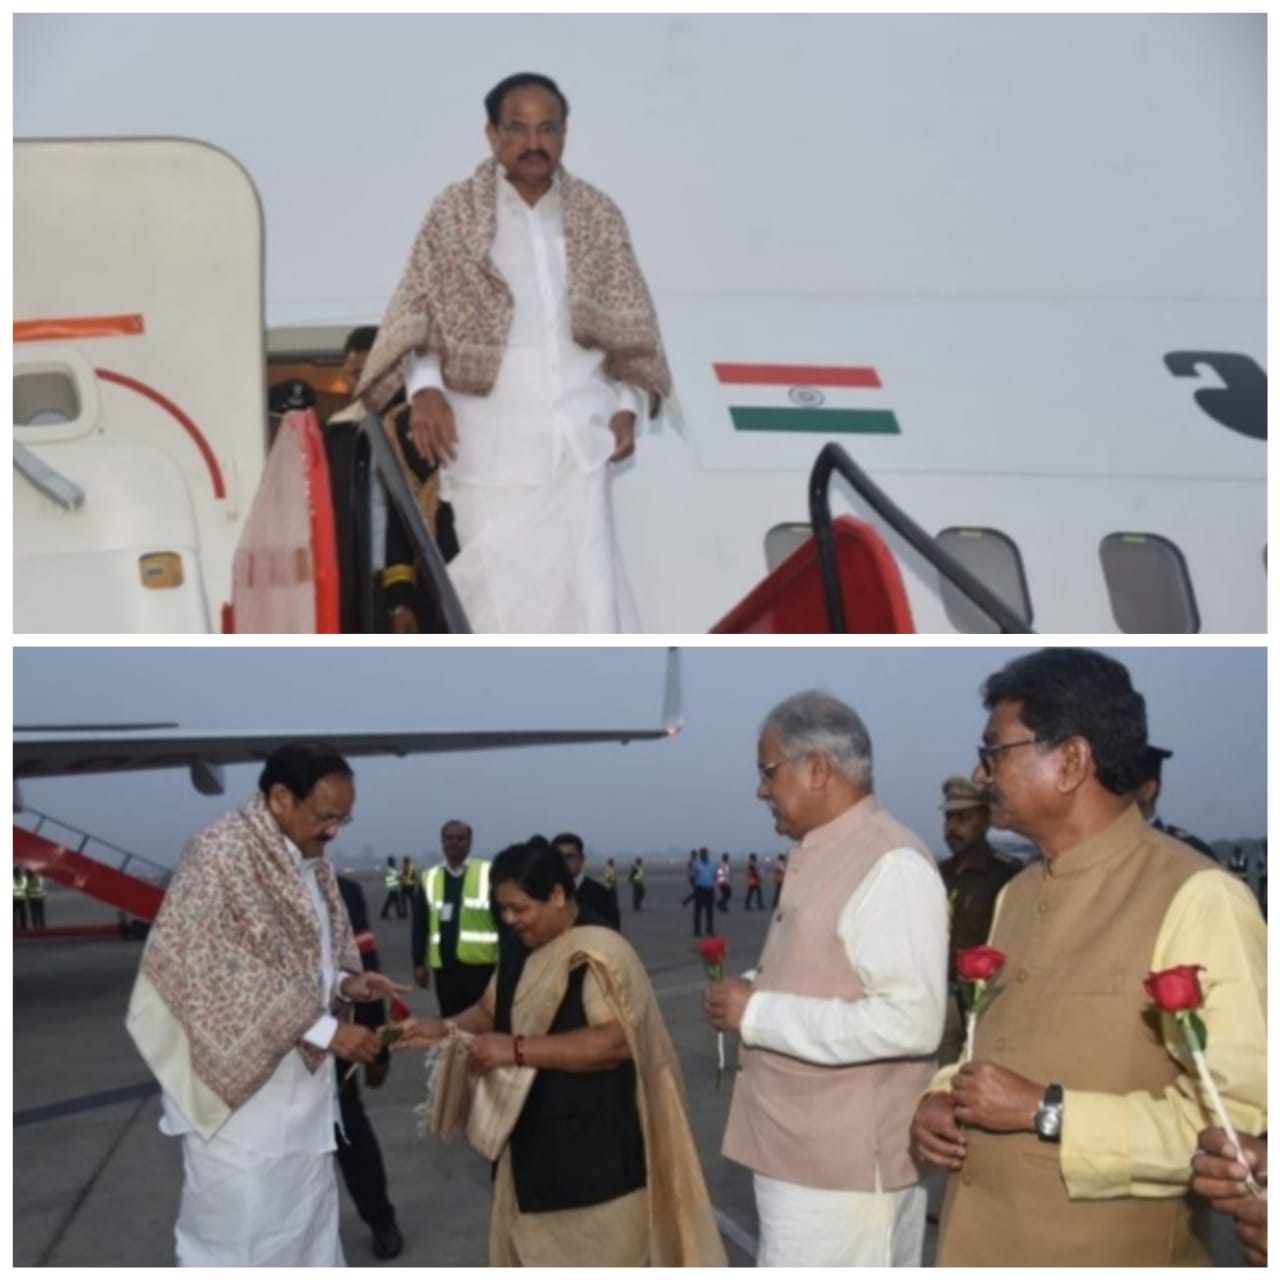 दो दिवसीय छग प्रवास पर रायपुर पहुँचे उपराष्ट्रपति, अरविन्द तिवारी की रिपोर्ट-रायपुर-